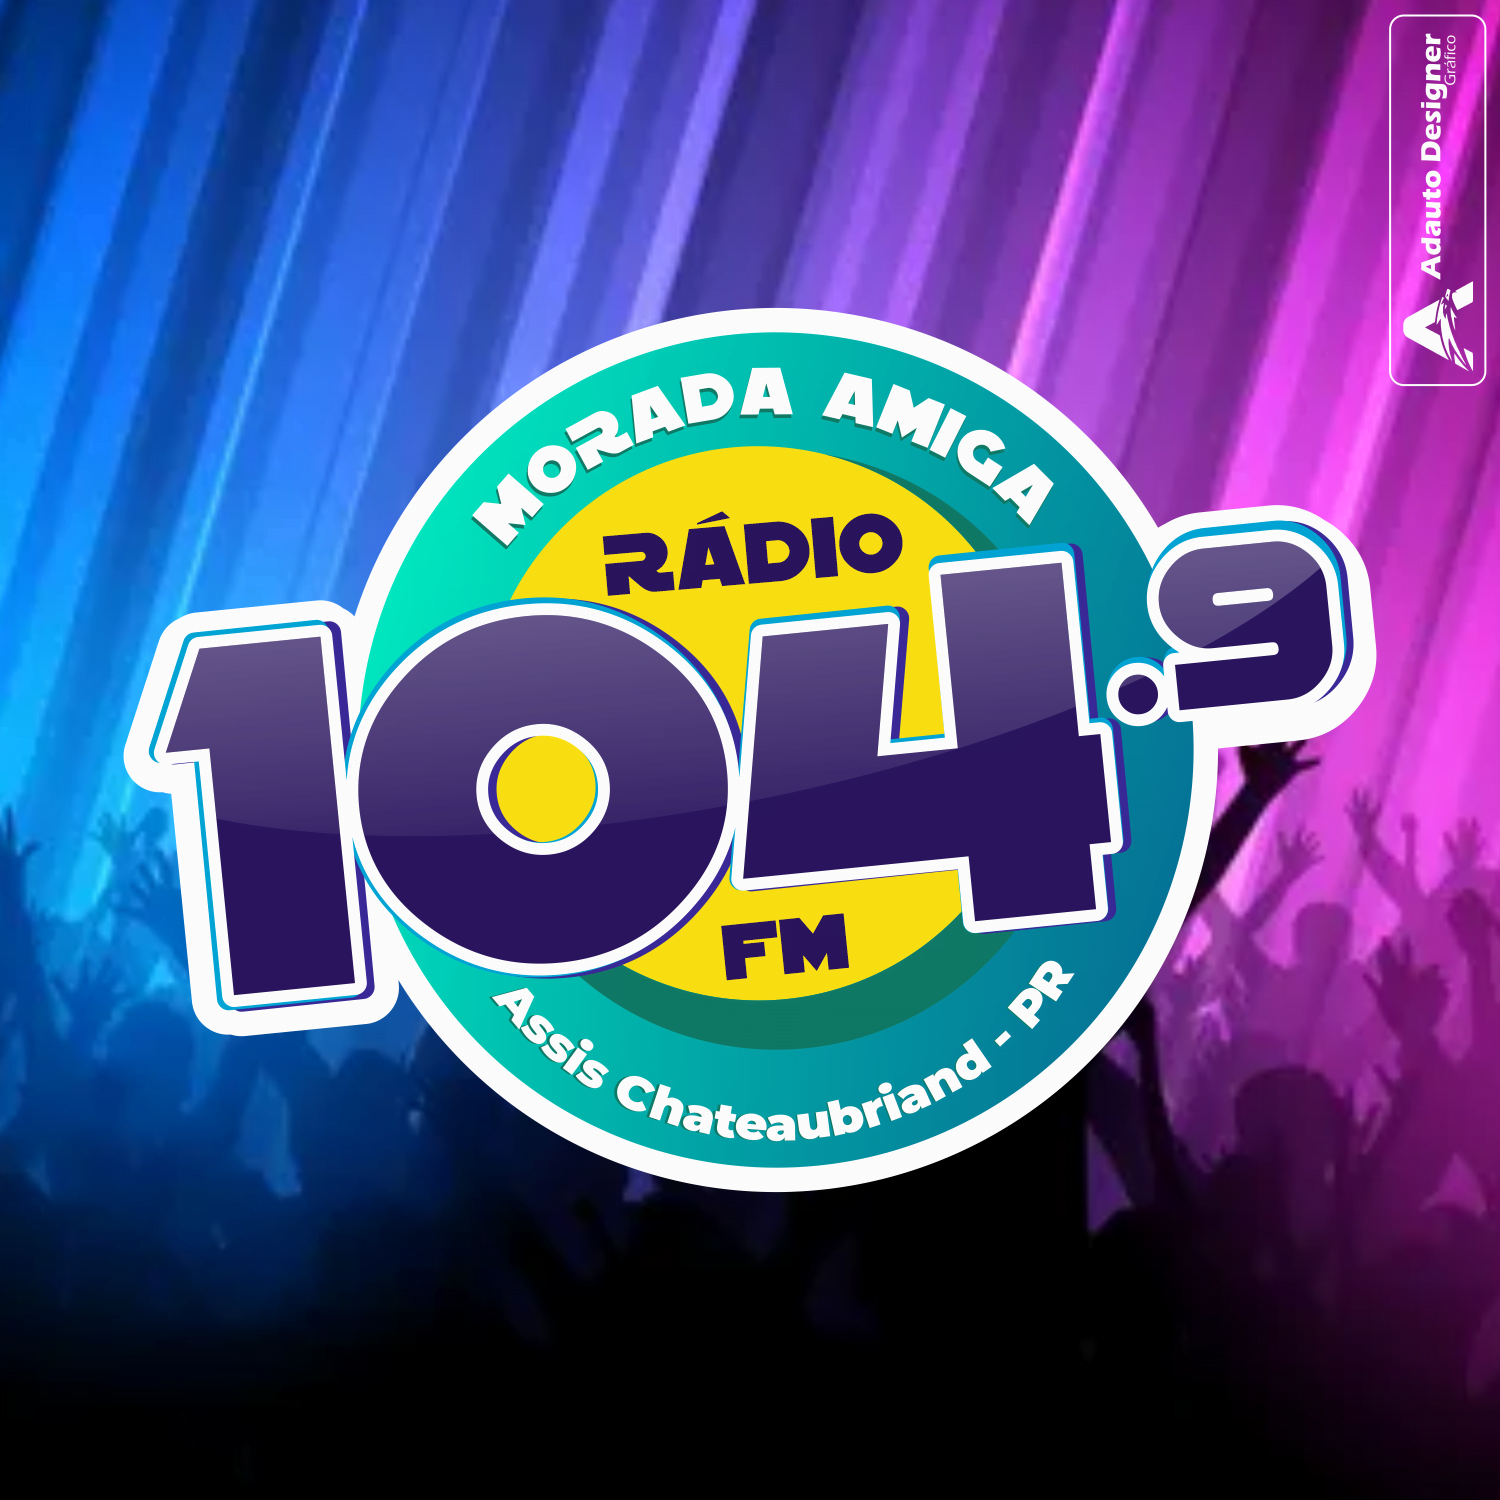 Rádio Morada Amiga 104.9 FM Assis Chateaubriand / PR